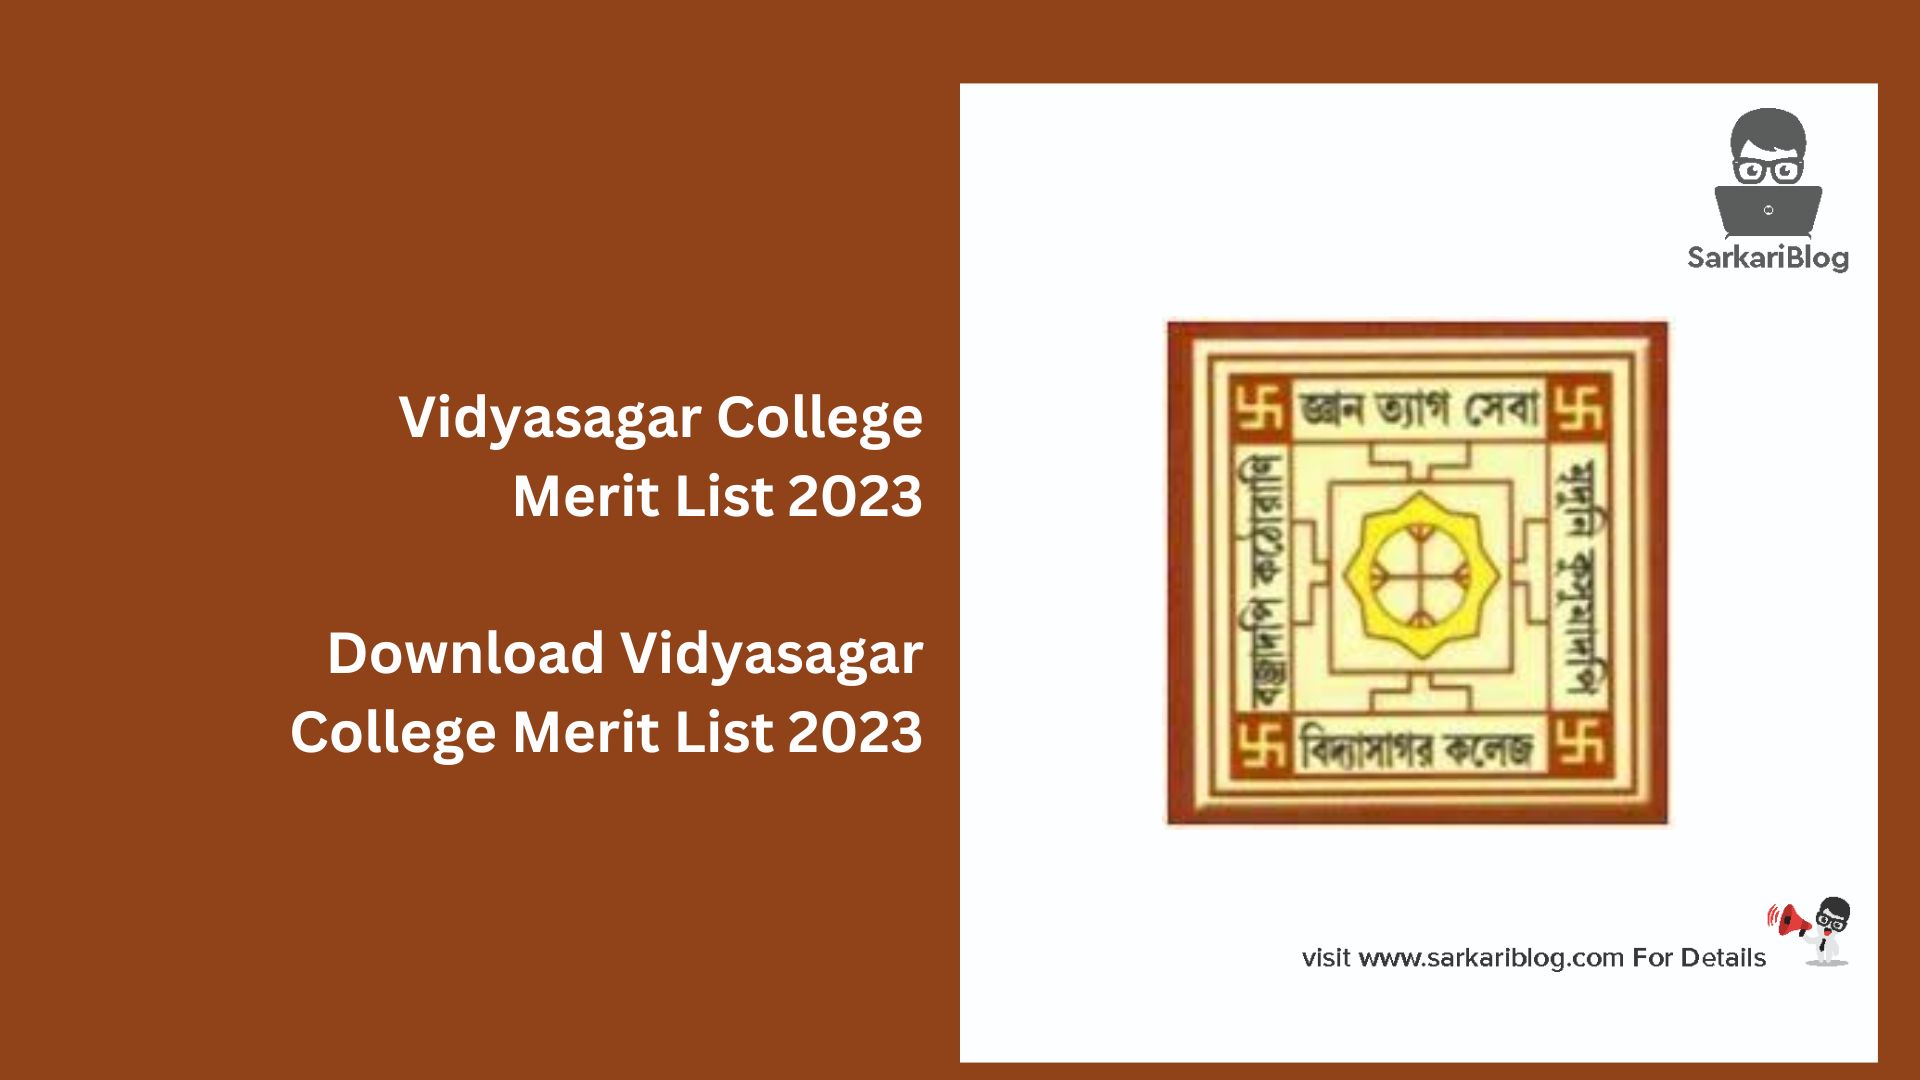 Vidyasagar College Merit List 2023